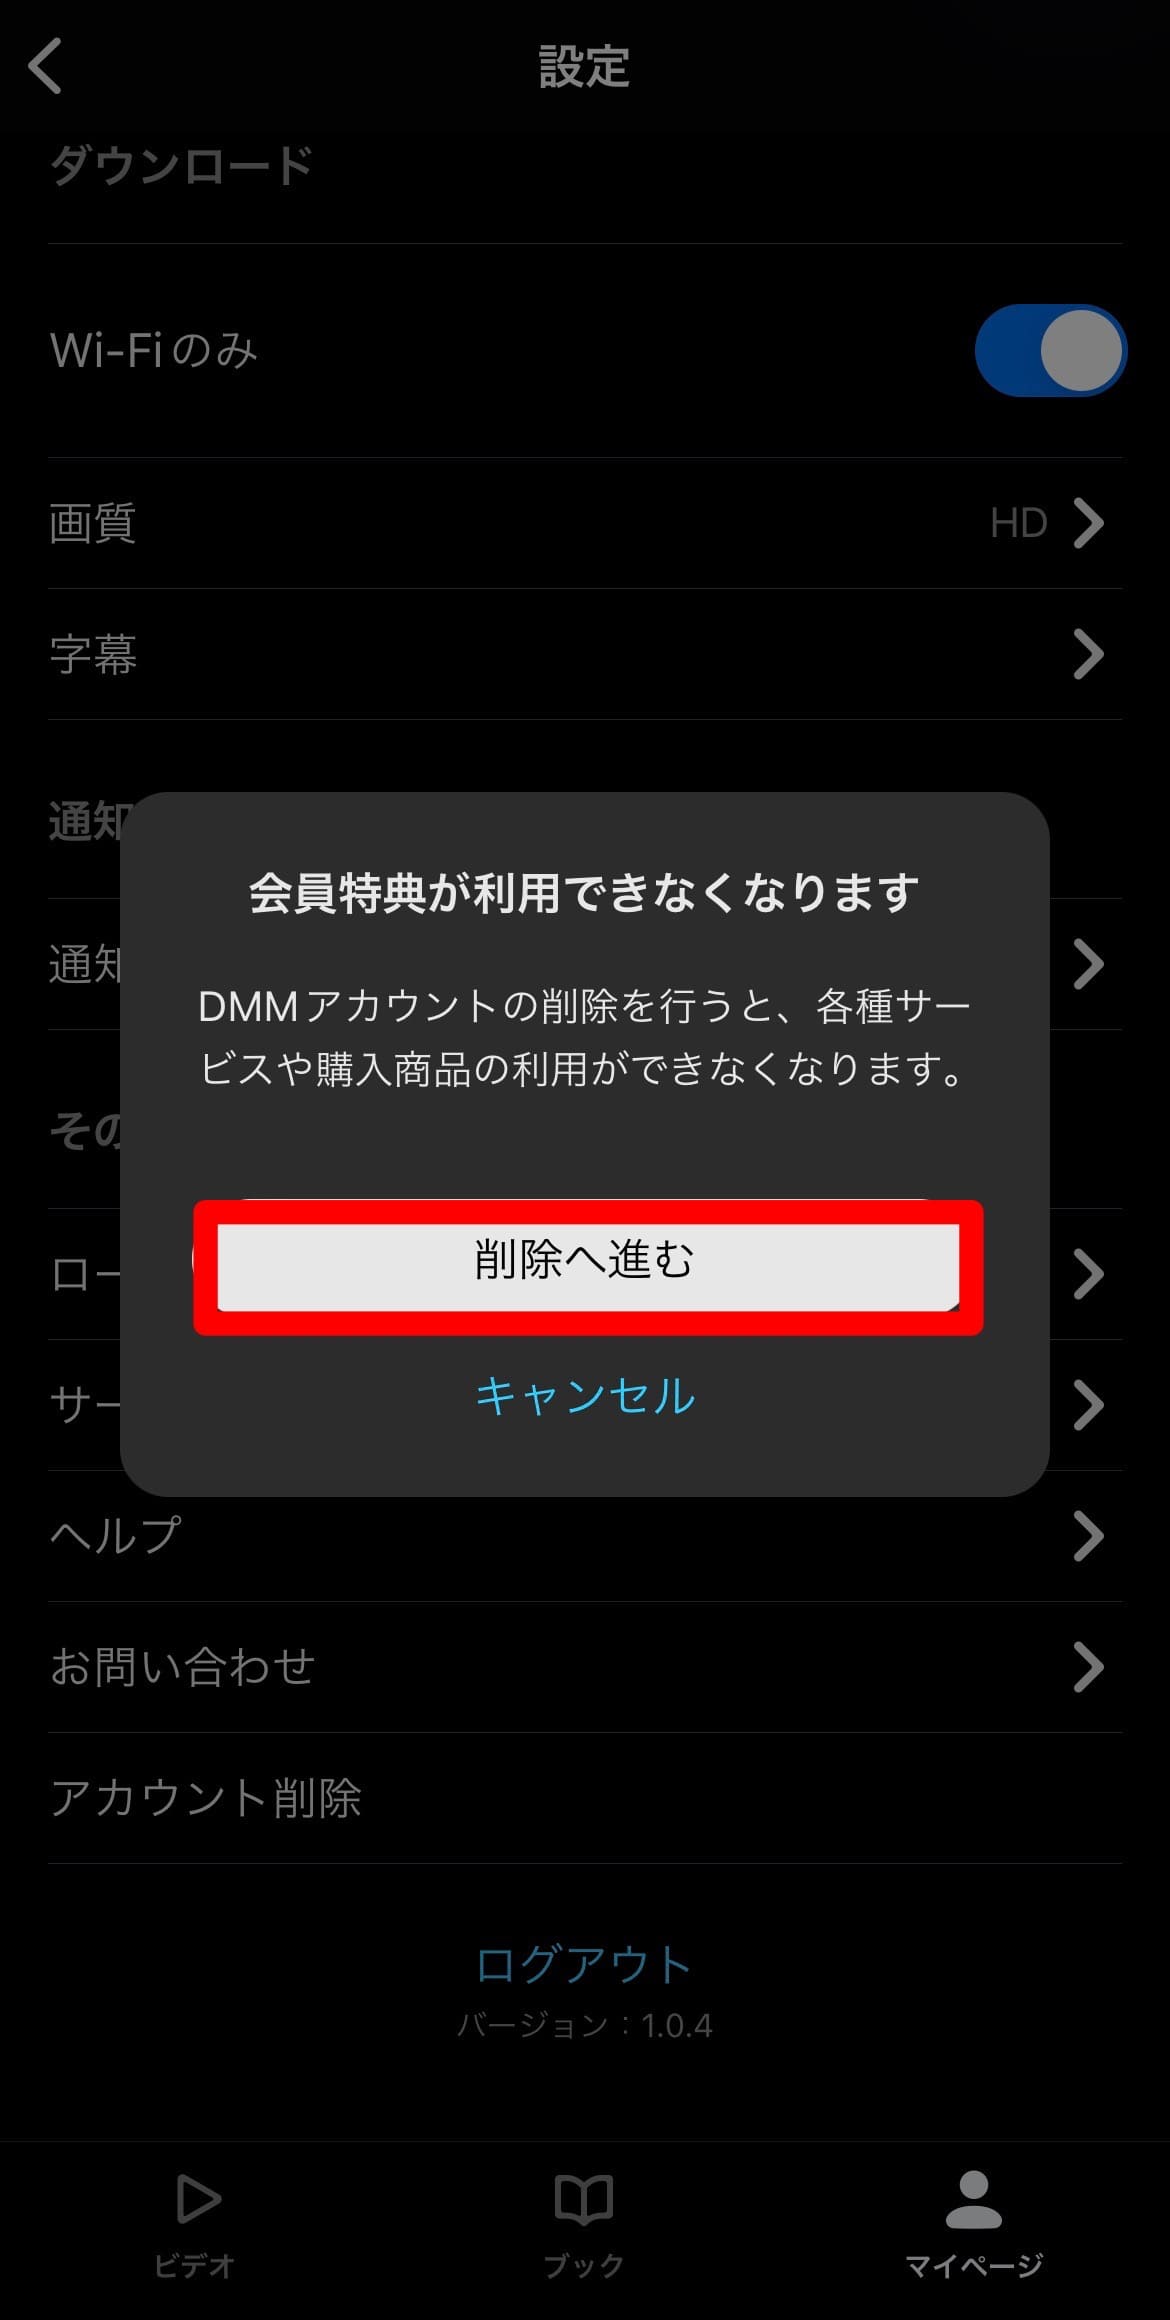 DMMTV アカウント削除手順